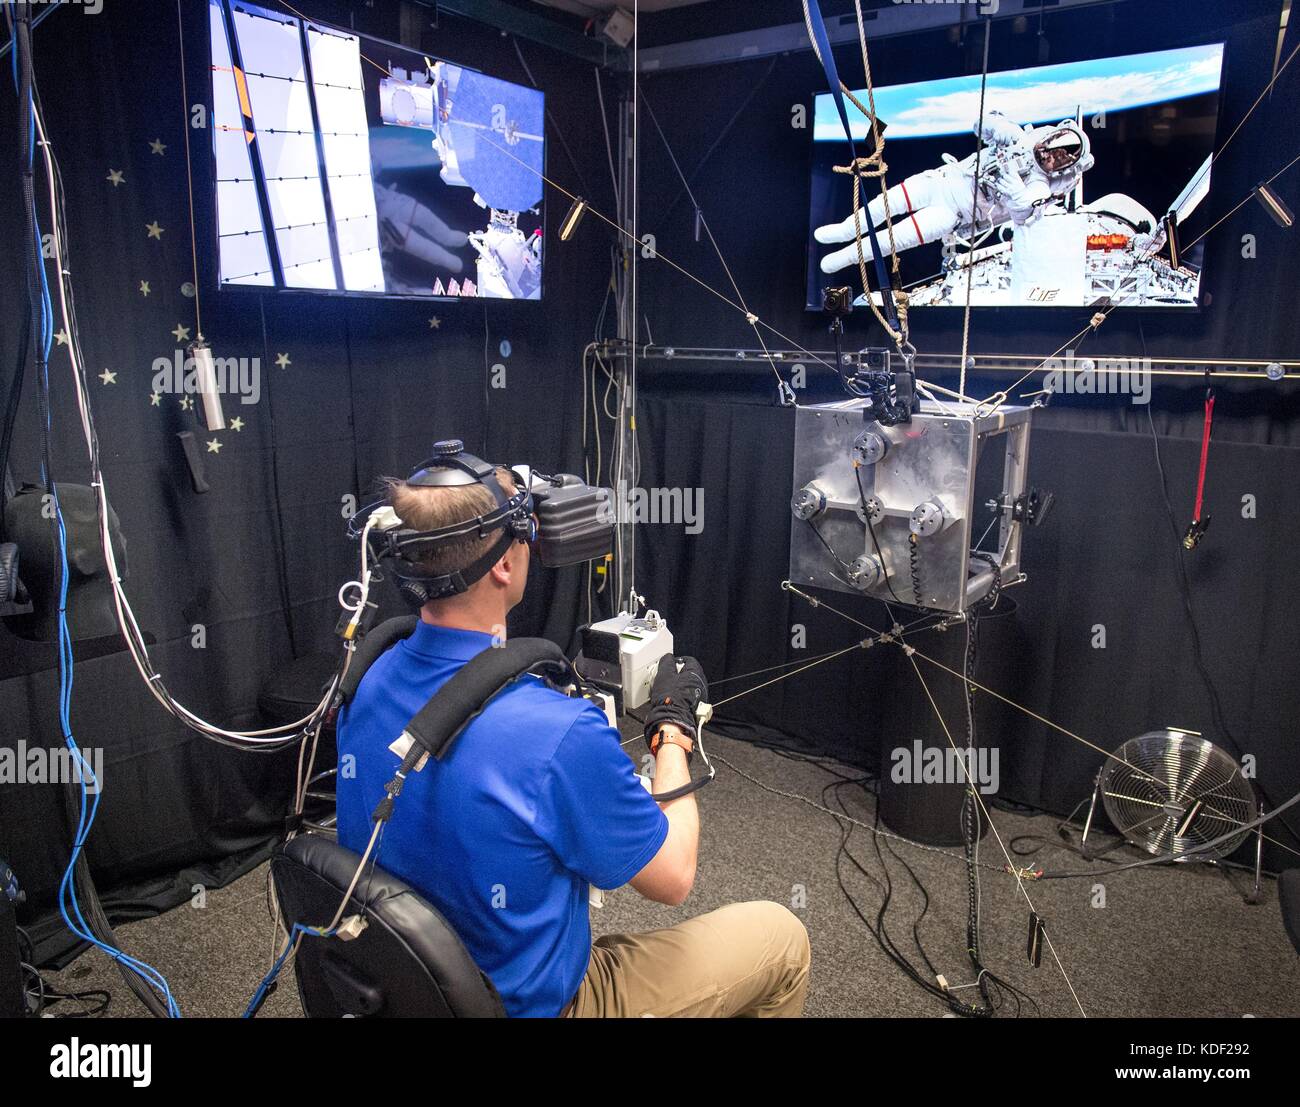 Nasa-Astronaut nick Haag verwendet eine Virtual reality Simulator während eines spacewalk Emergency Training über die vereinfachte Hilfen für eva Rescue (sicherere) Pack am Johnson Space Flight Center Virtual Reality Lab April 26, 2017 in Houston, Texas. (Foto von J.m. eddins jr. über planetpix) Stockfoto